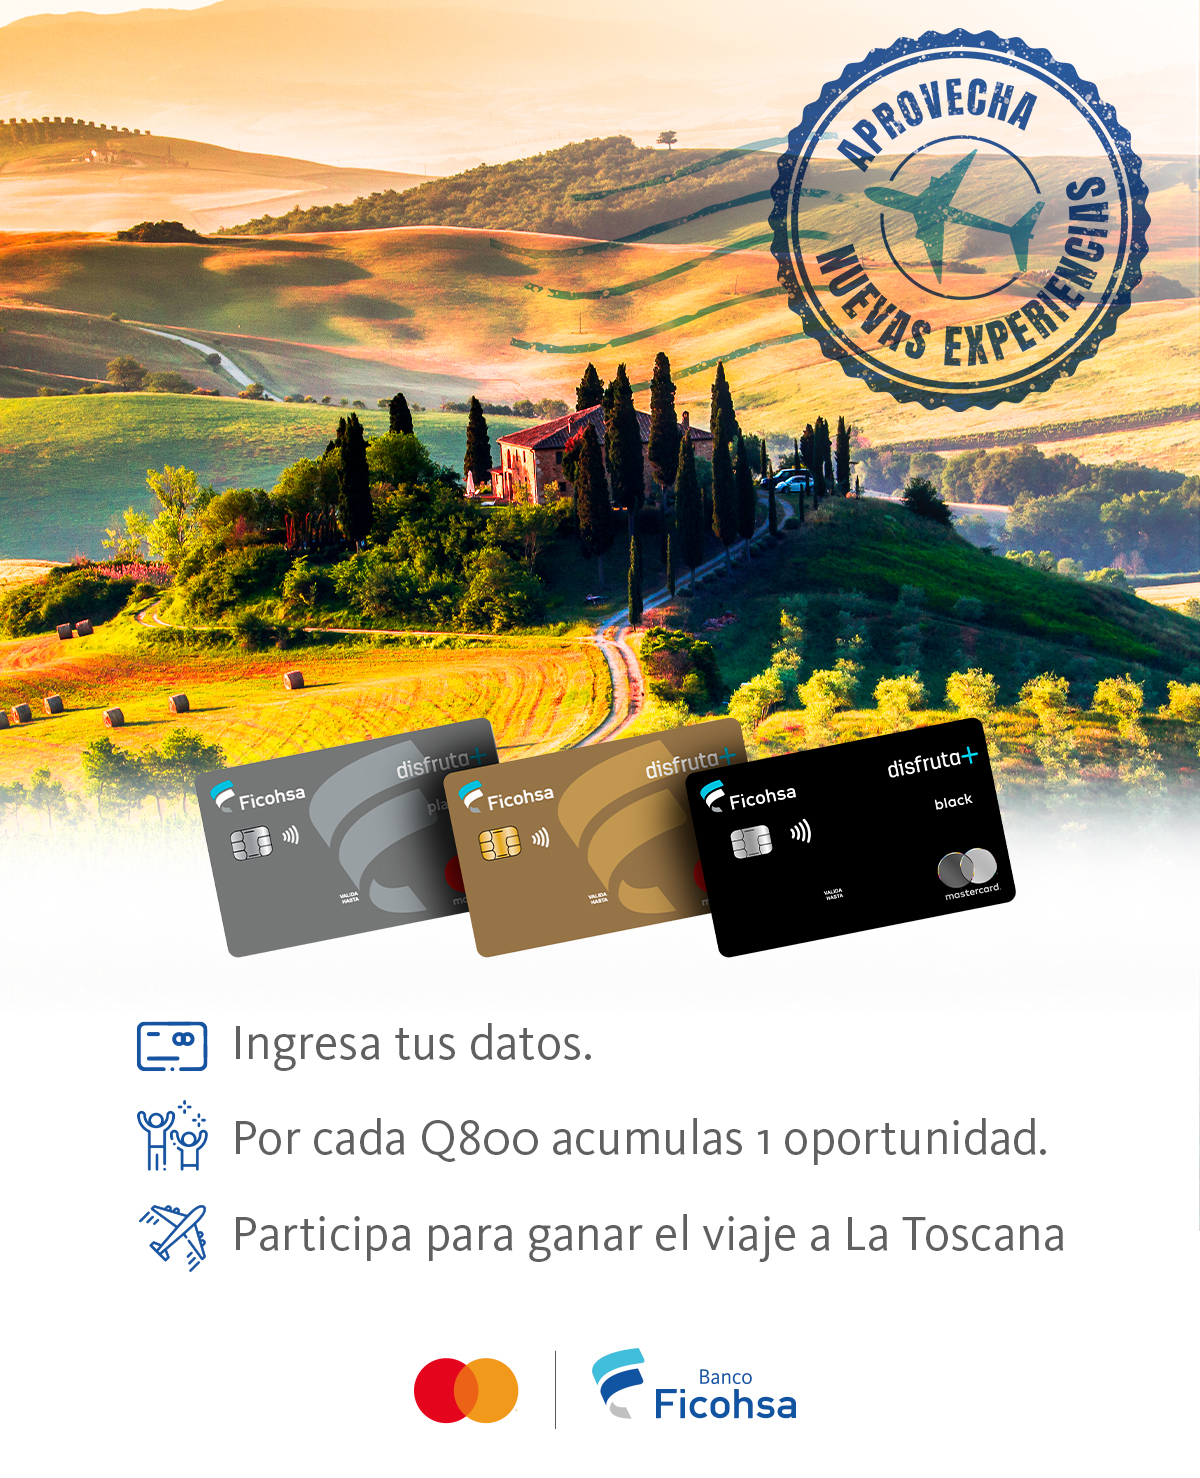 Gana un viaje a Toscana con Banco Ficohsa y disfruta+ mastercard